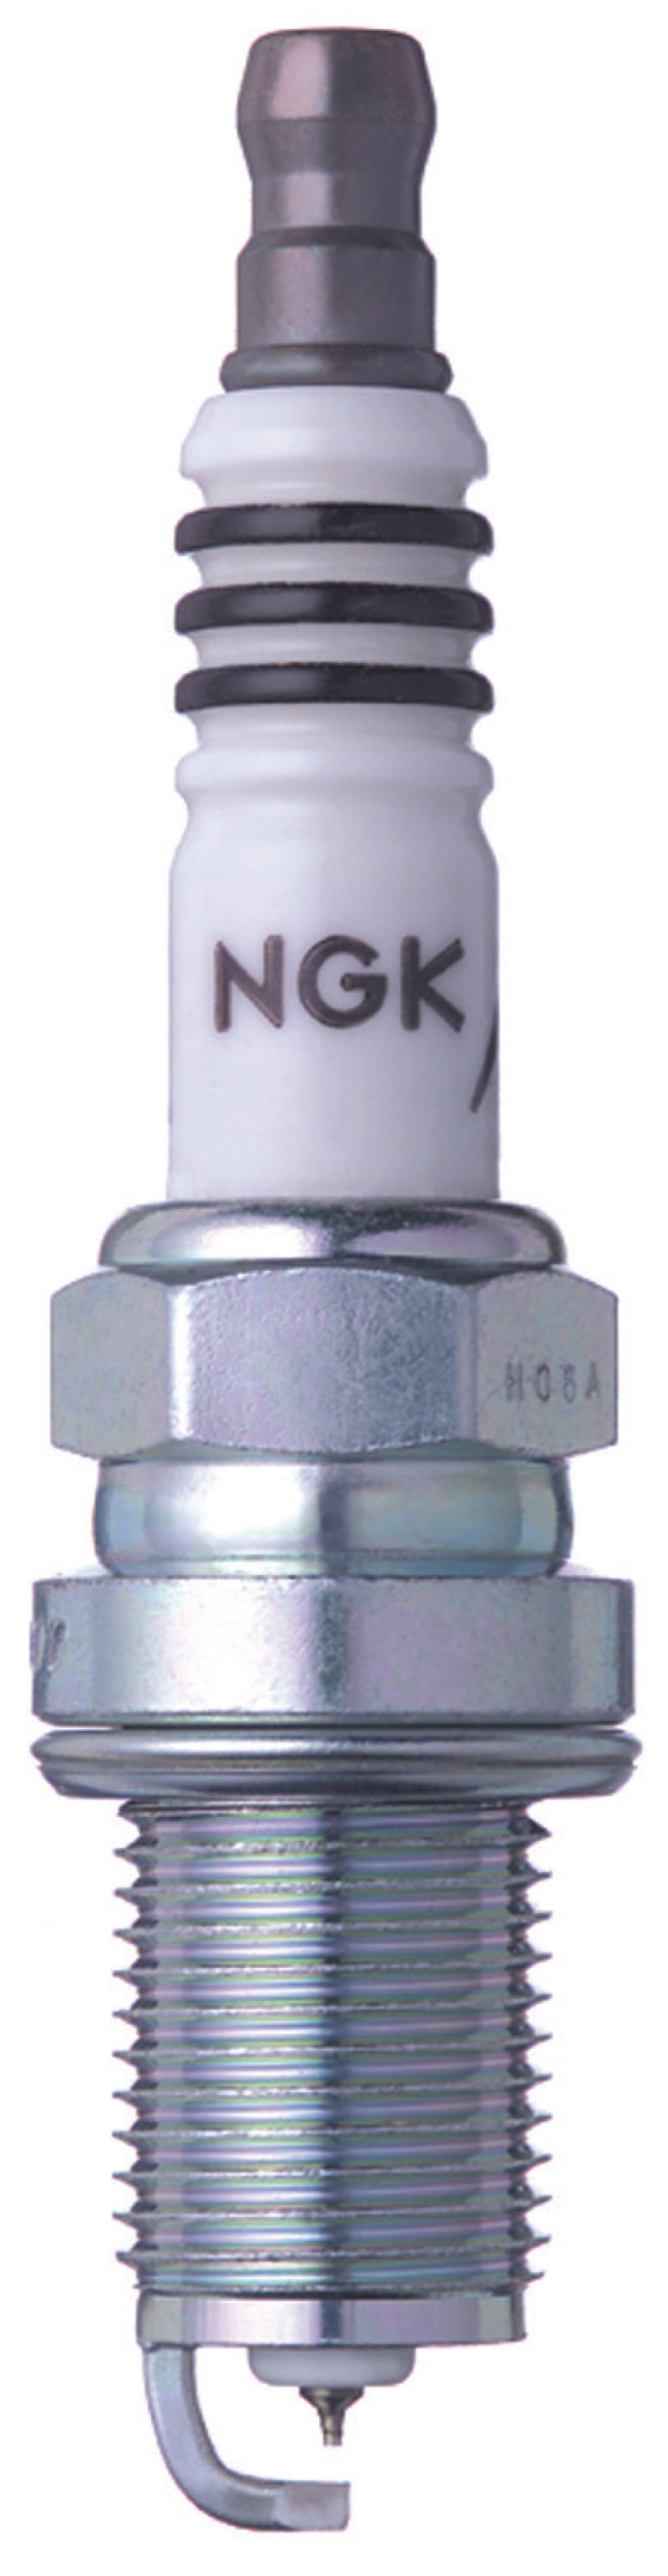 NGK Iridium Spark Plugs Box of 4 (BKR9EIX).